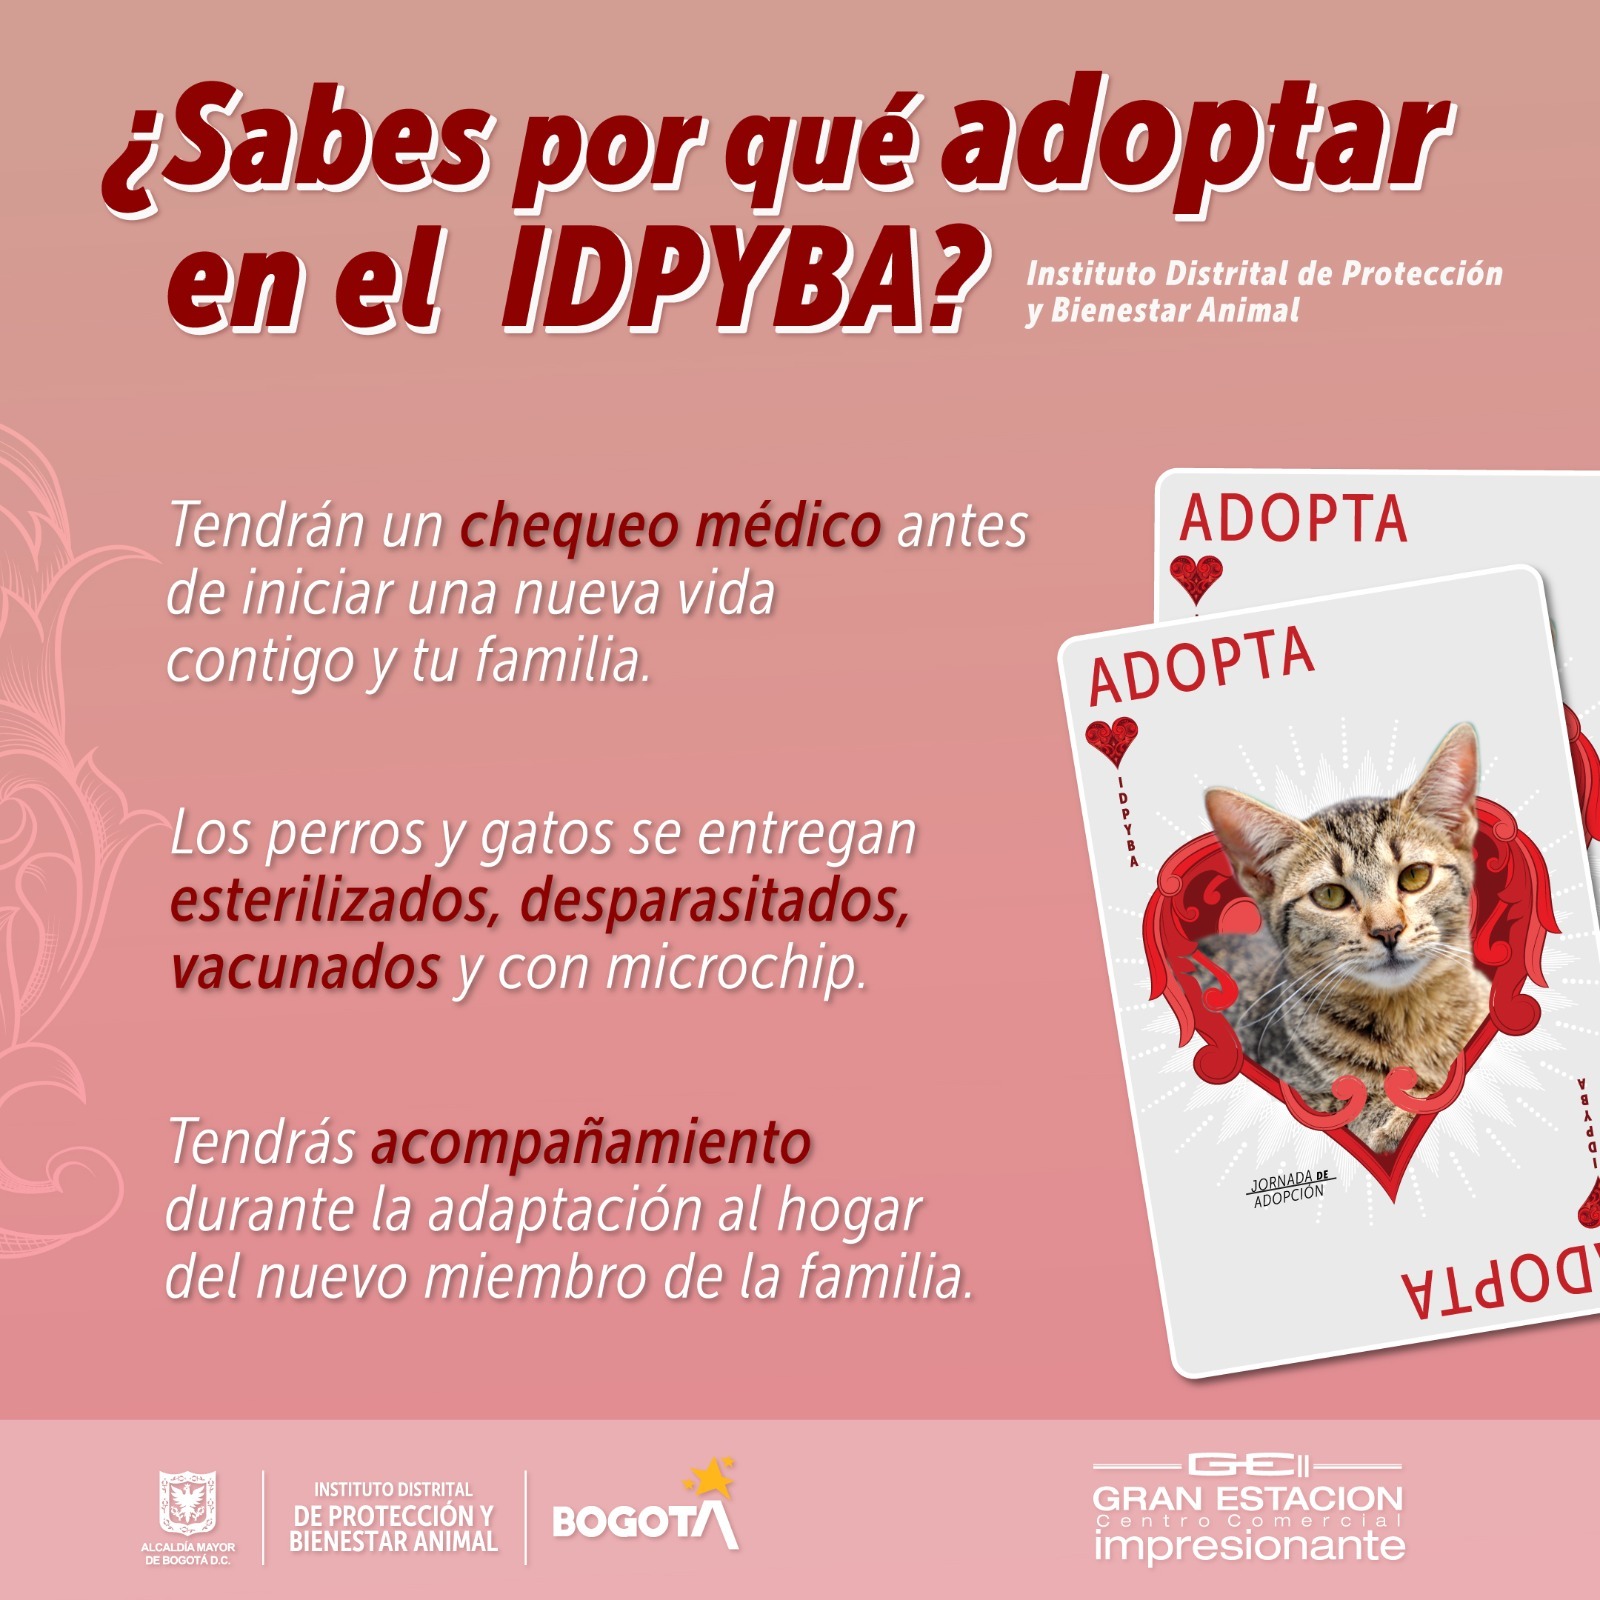 ¿Por qué es importante adaptar en el Instituto de Protección Animal de Bogotá? 